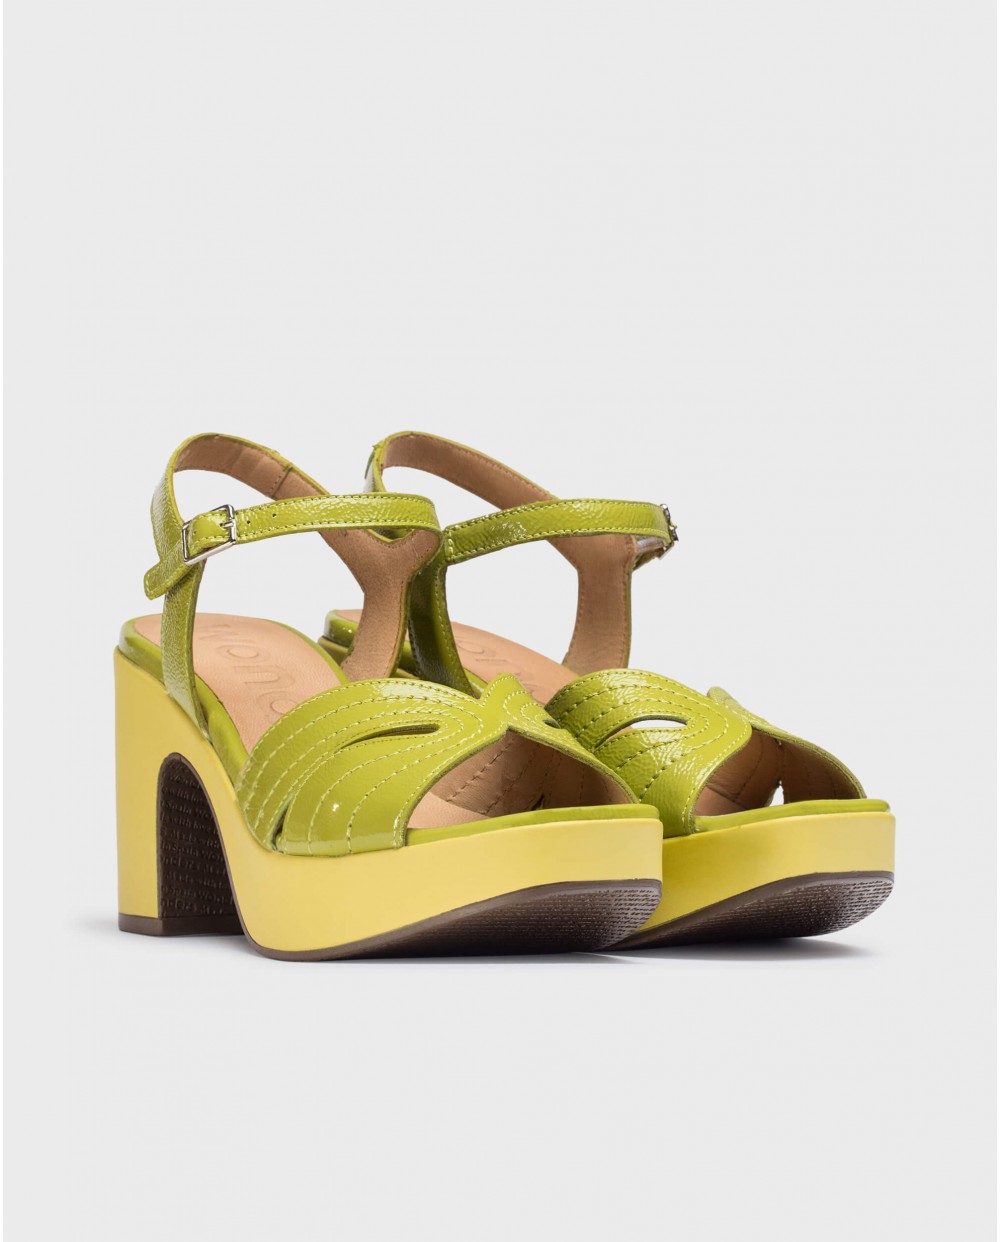 Wonders-Women shoes-Lime LISBOA Sandal